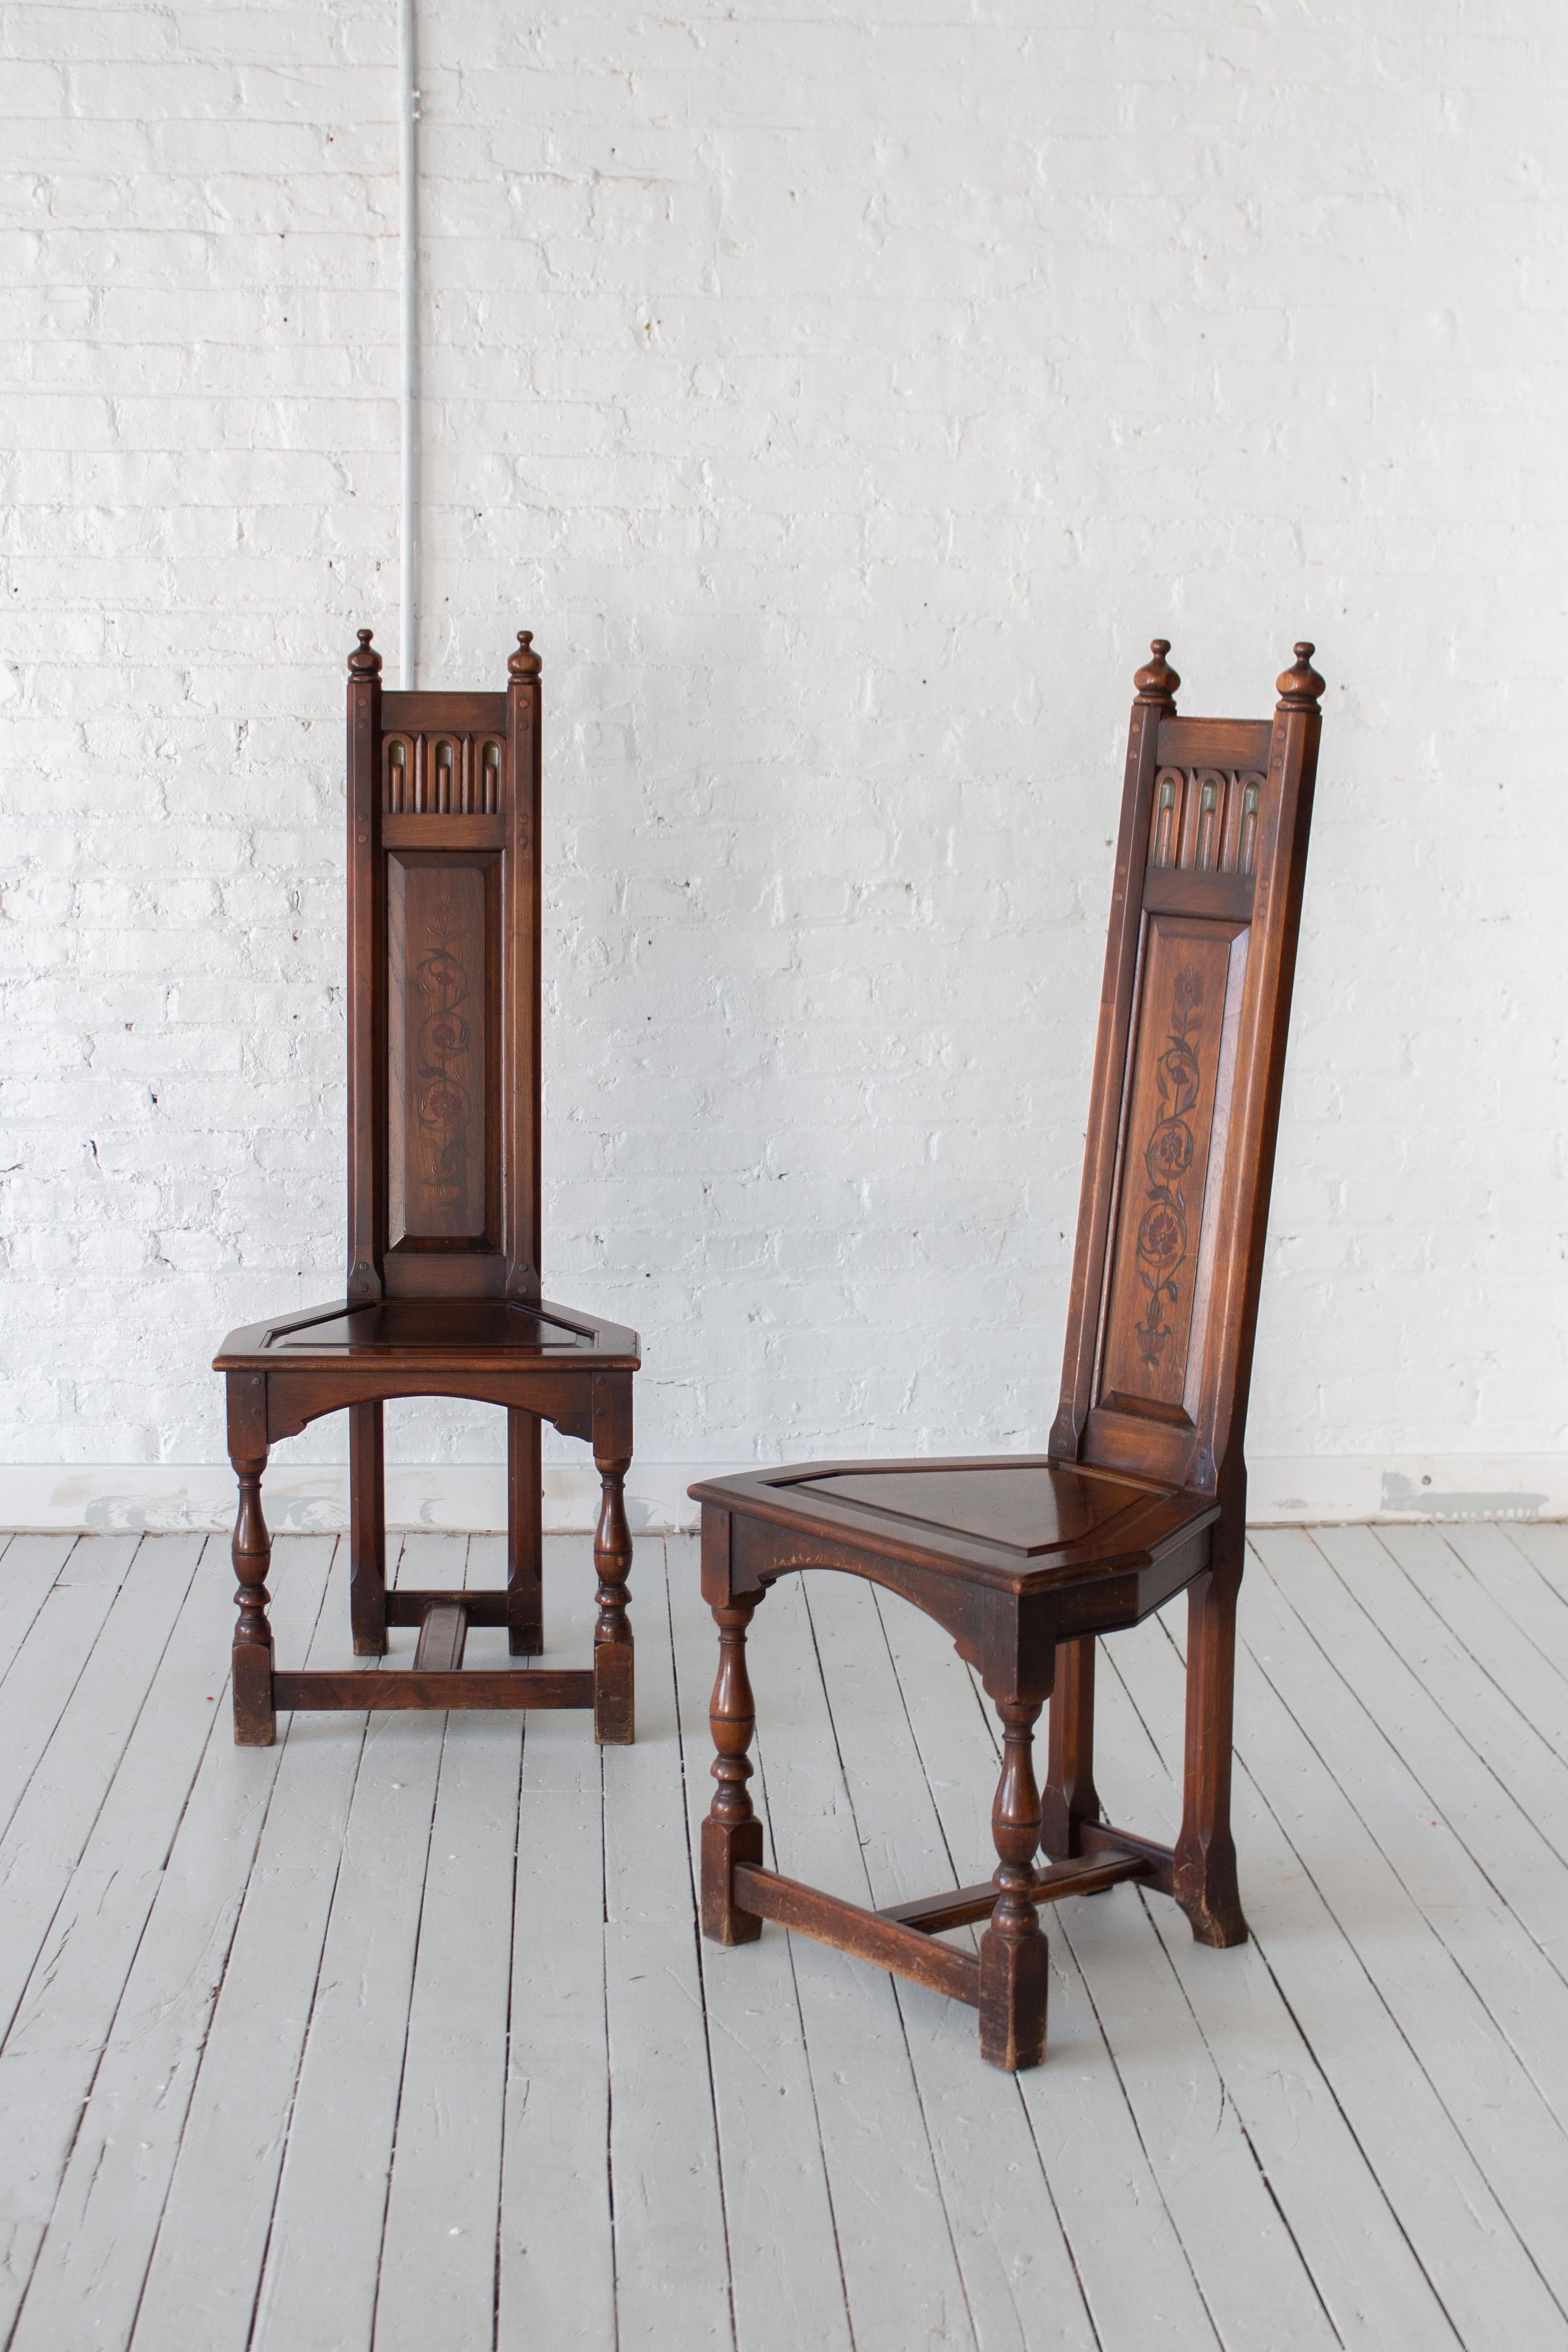 Une paire de chaises d'autel de style néo-gothique par Kittinger Furniture. Dossiers en bois élancés avec détails polychromes. Assises trapézoïdales et pieds en bois tourné. Riche patine sur l'ensemble du bois. Marqué 